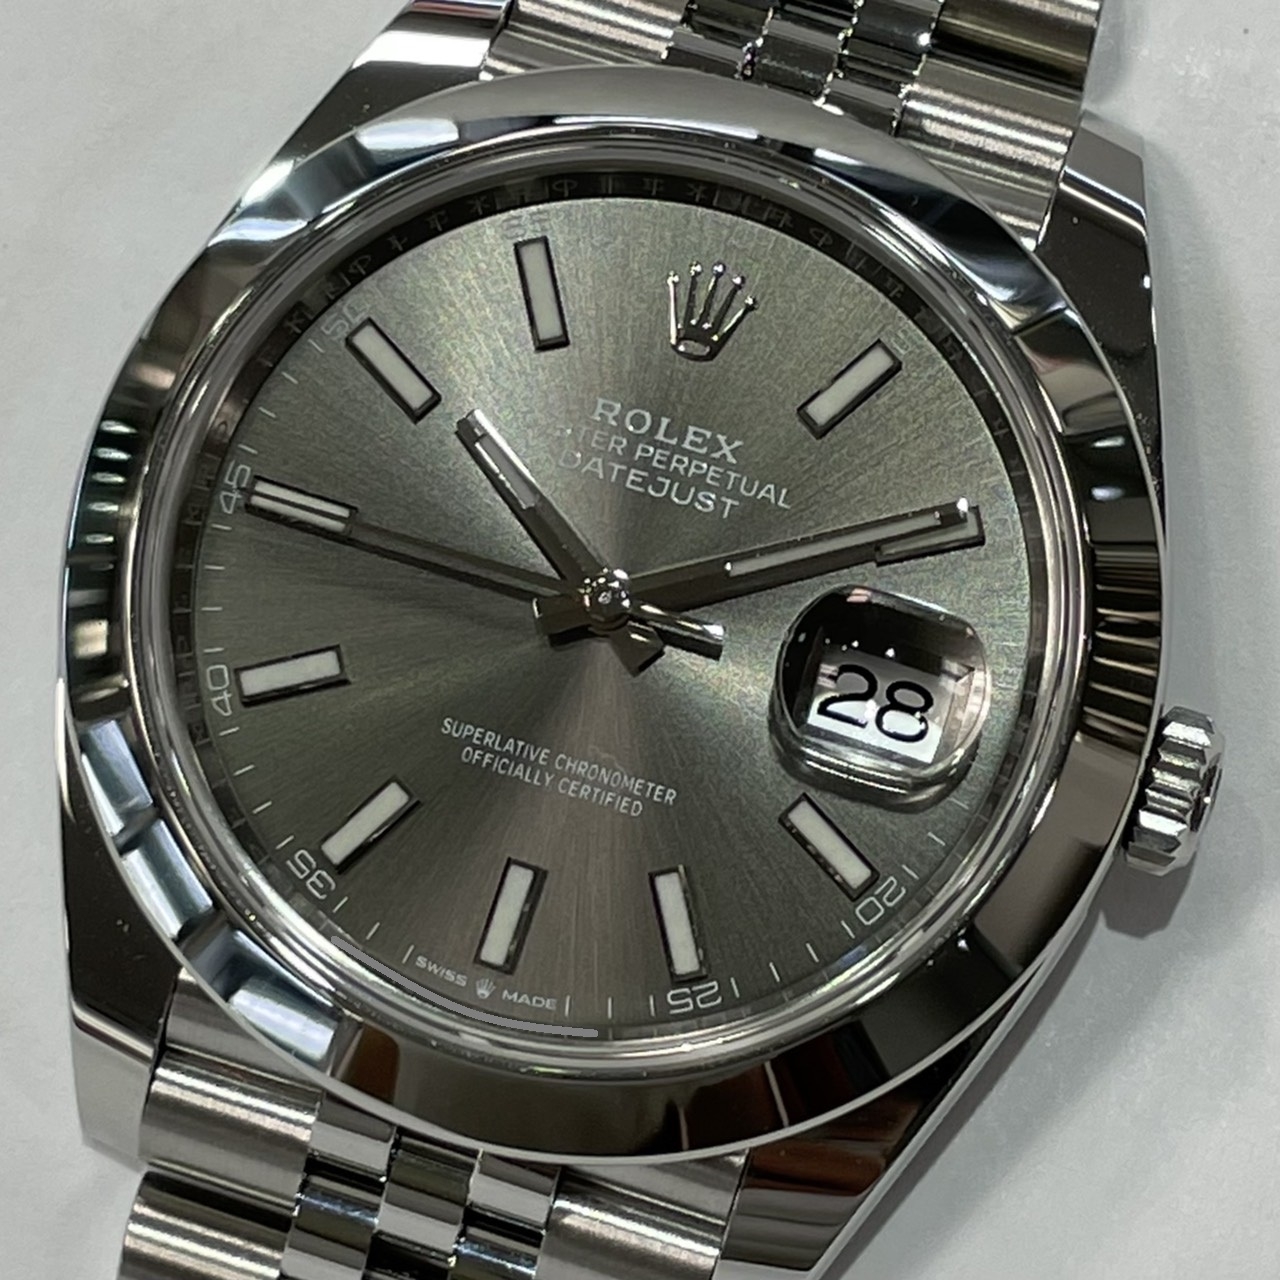 ロレックス Rolex 腕時計 オイスター パーペチュアル デイトジャスト 41 126300 デイト 夜光針/インデックス ルーレット刻印 ランダムシリアル ホワイト文字盤 オイスターブレス オイスタースチール 自動巻き